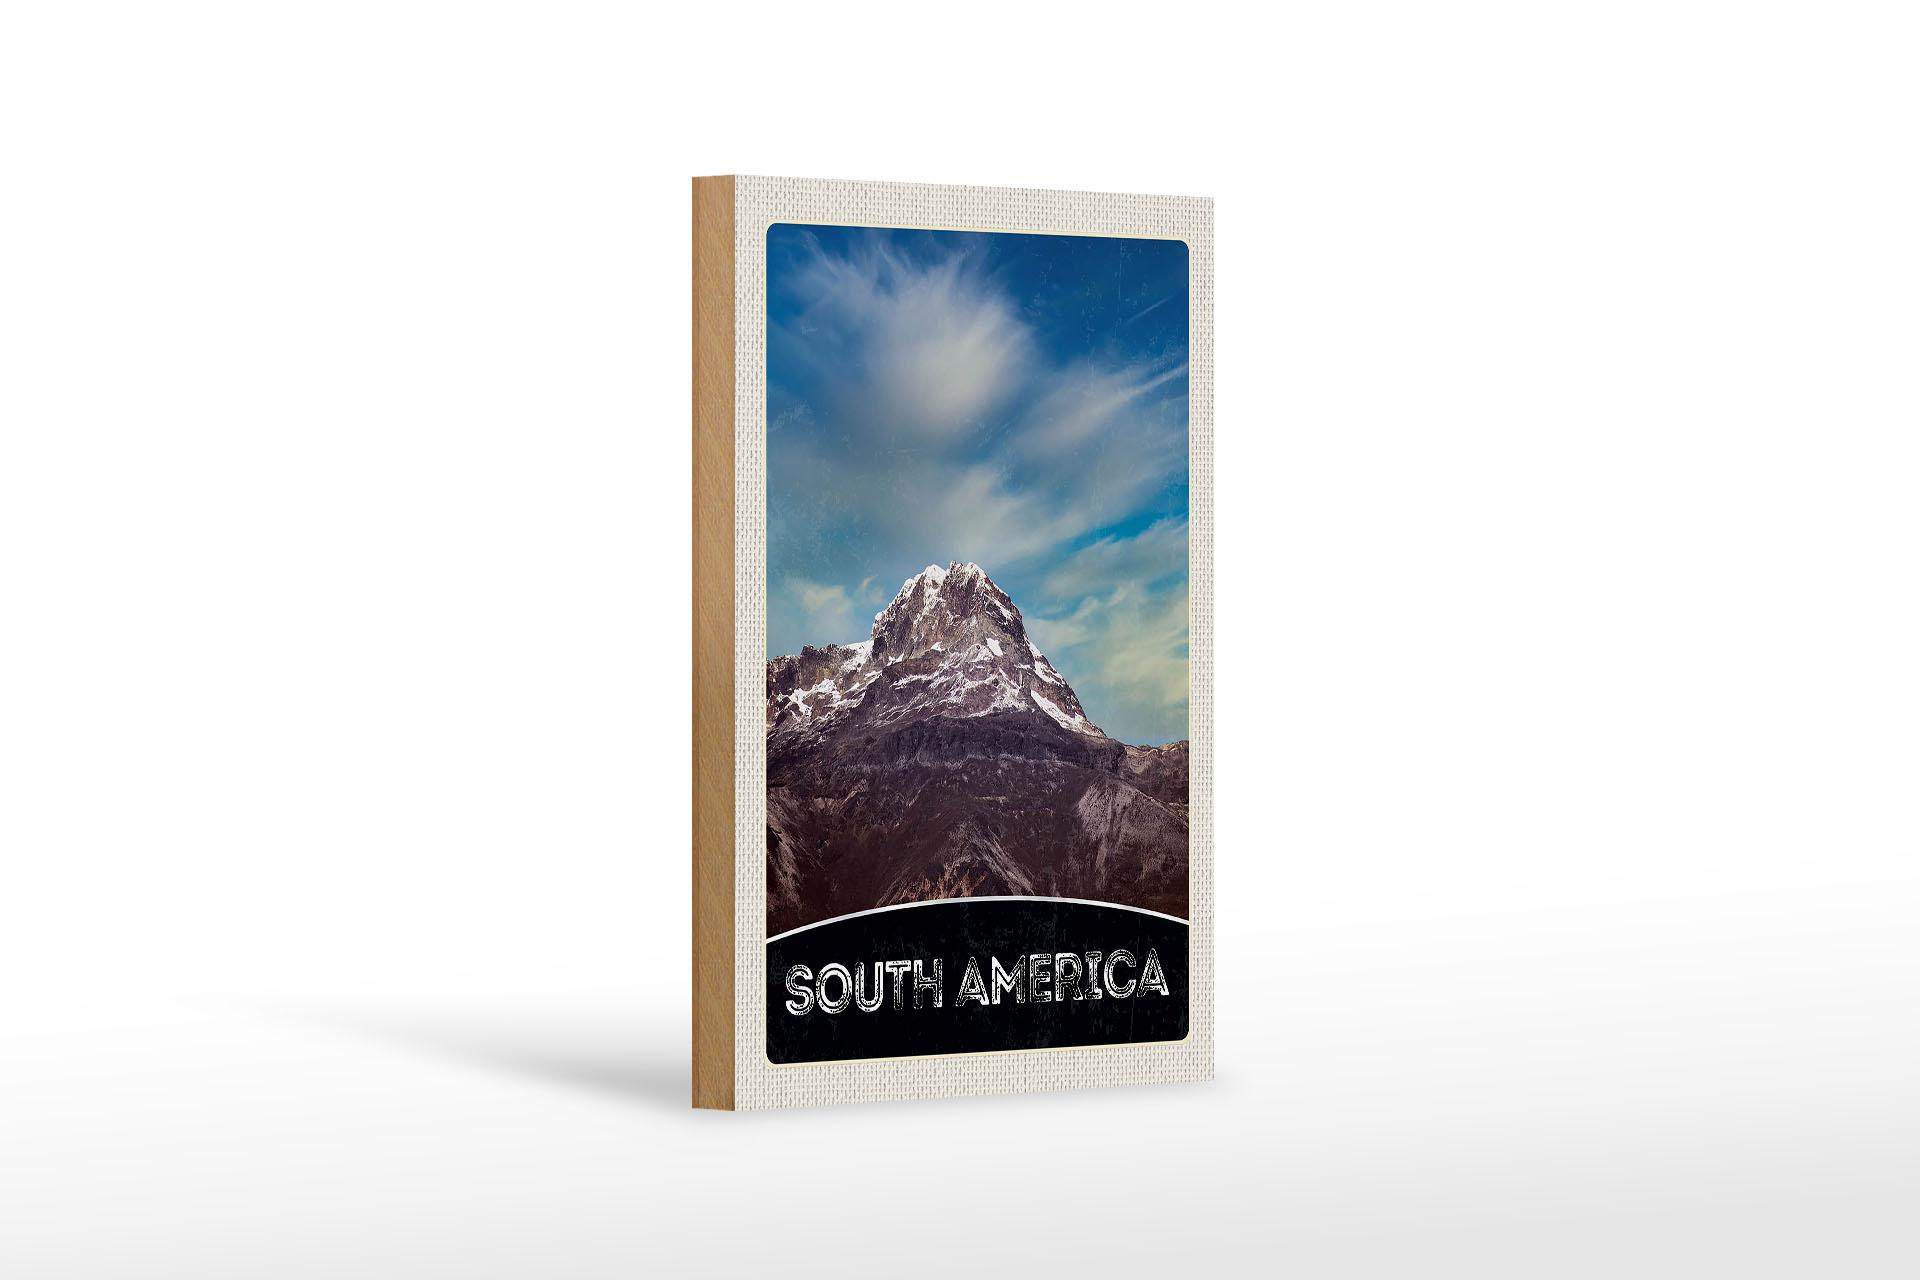 Holzschild Reise 12x18 cm Süd Amerika Gebirge Natur Schnee Schild